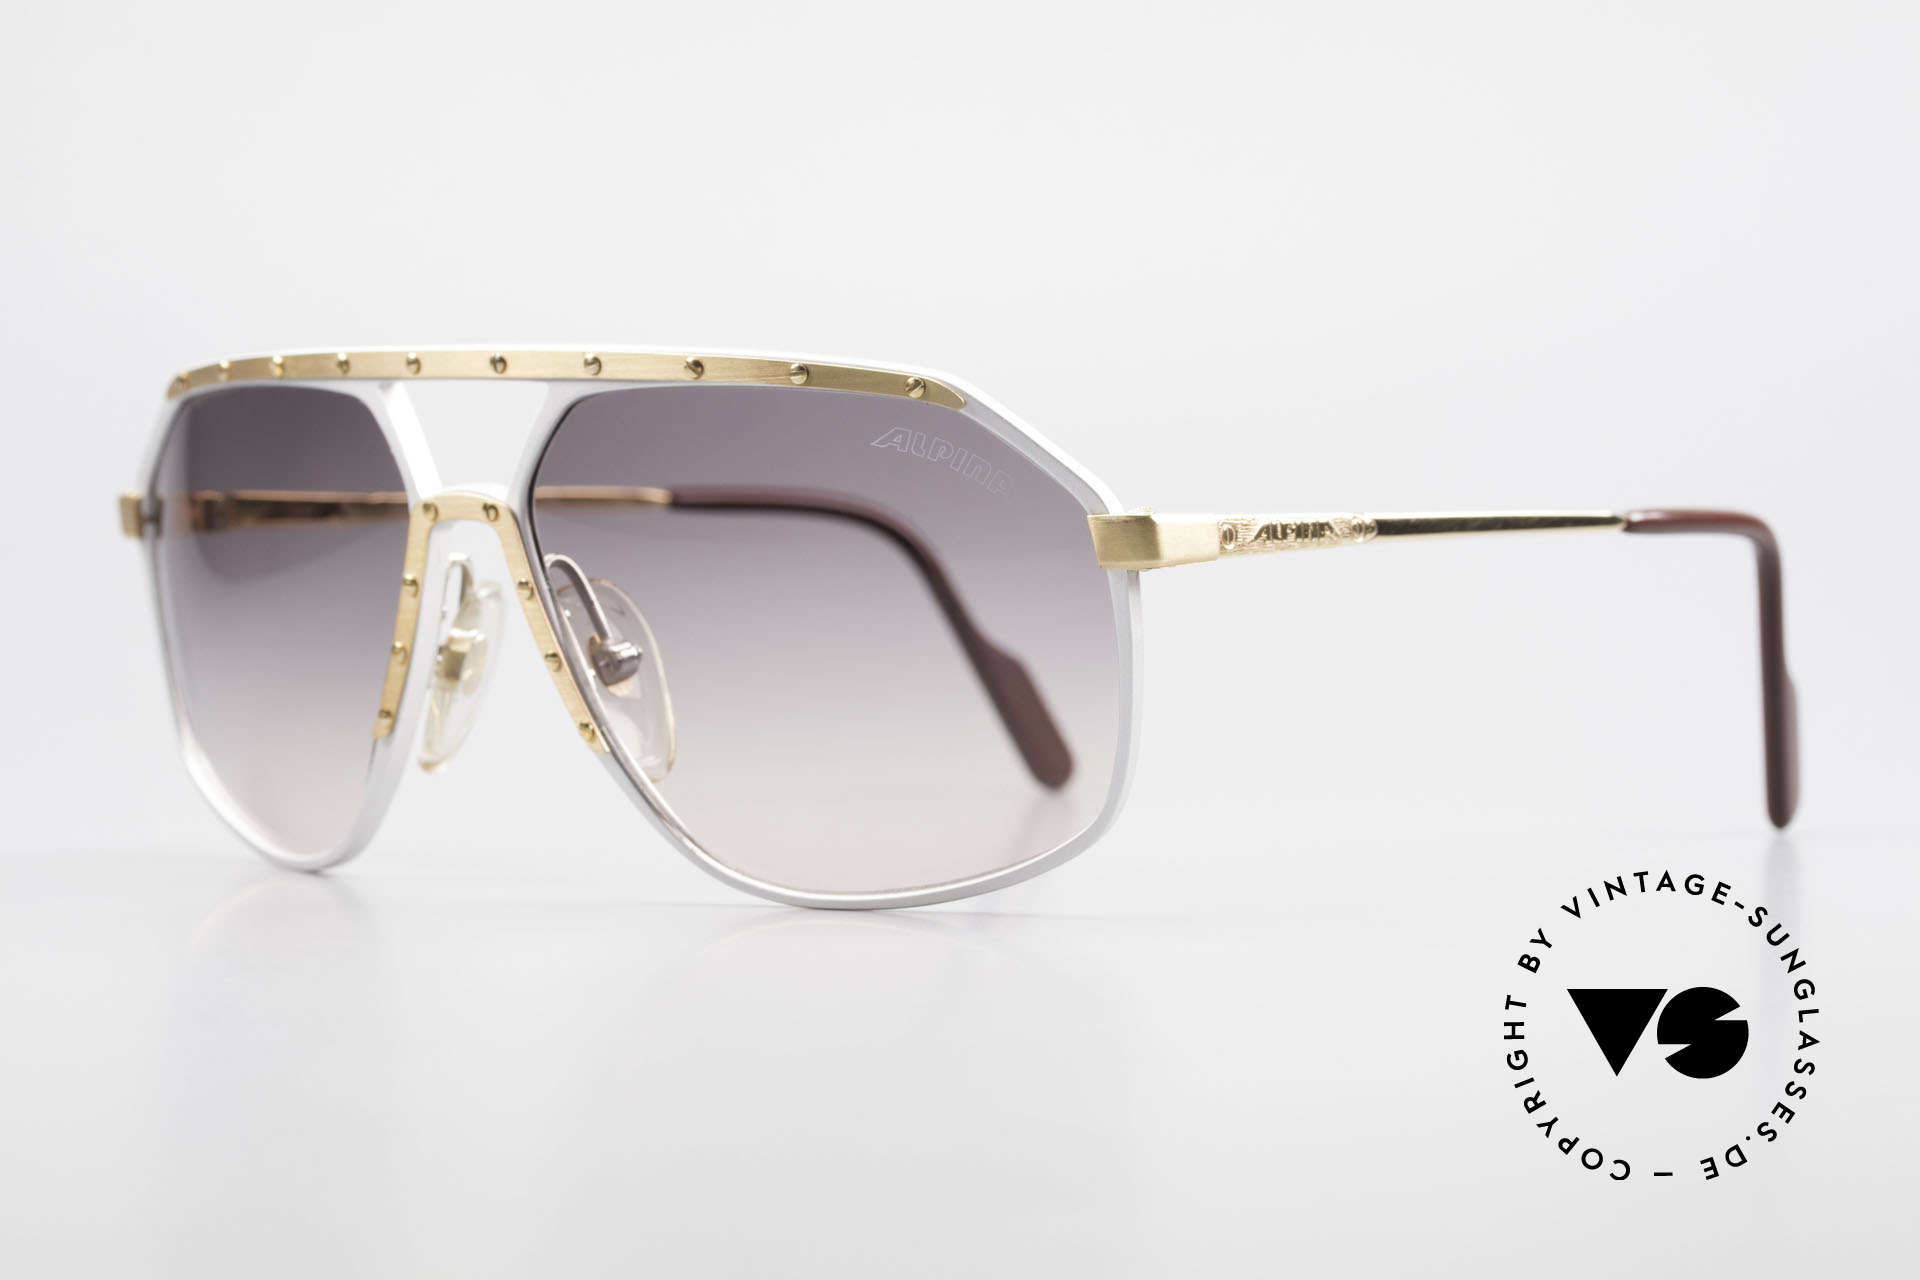 Alpina M6 Vintage Brille Par Excellence, HANDMADE gefertigt in verschiedenen Variationen, Passend für Herren und Damen